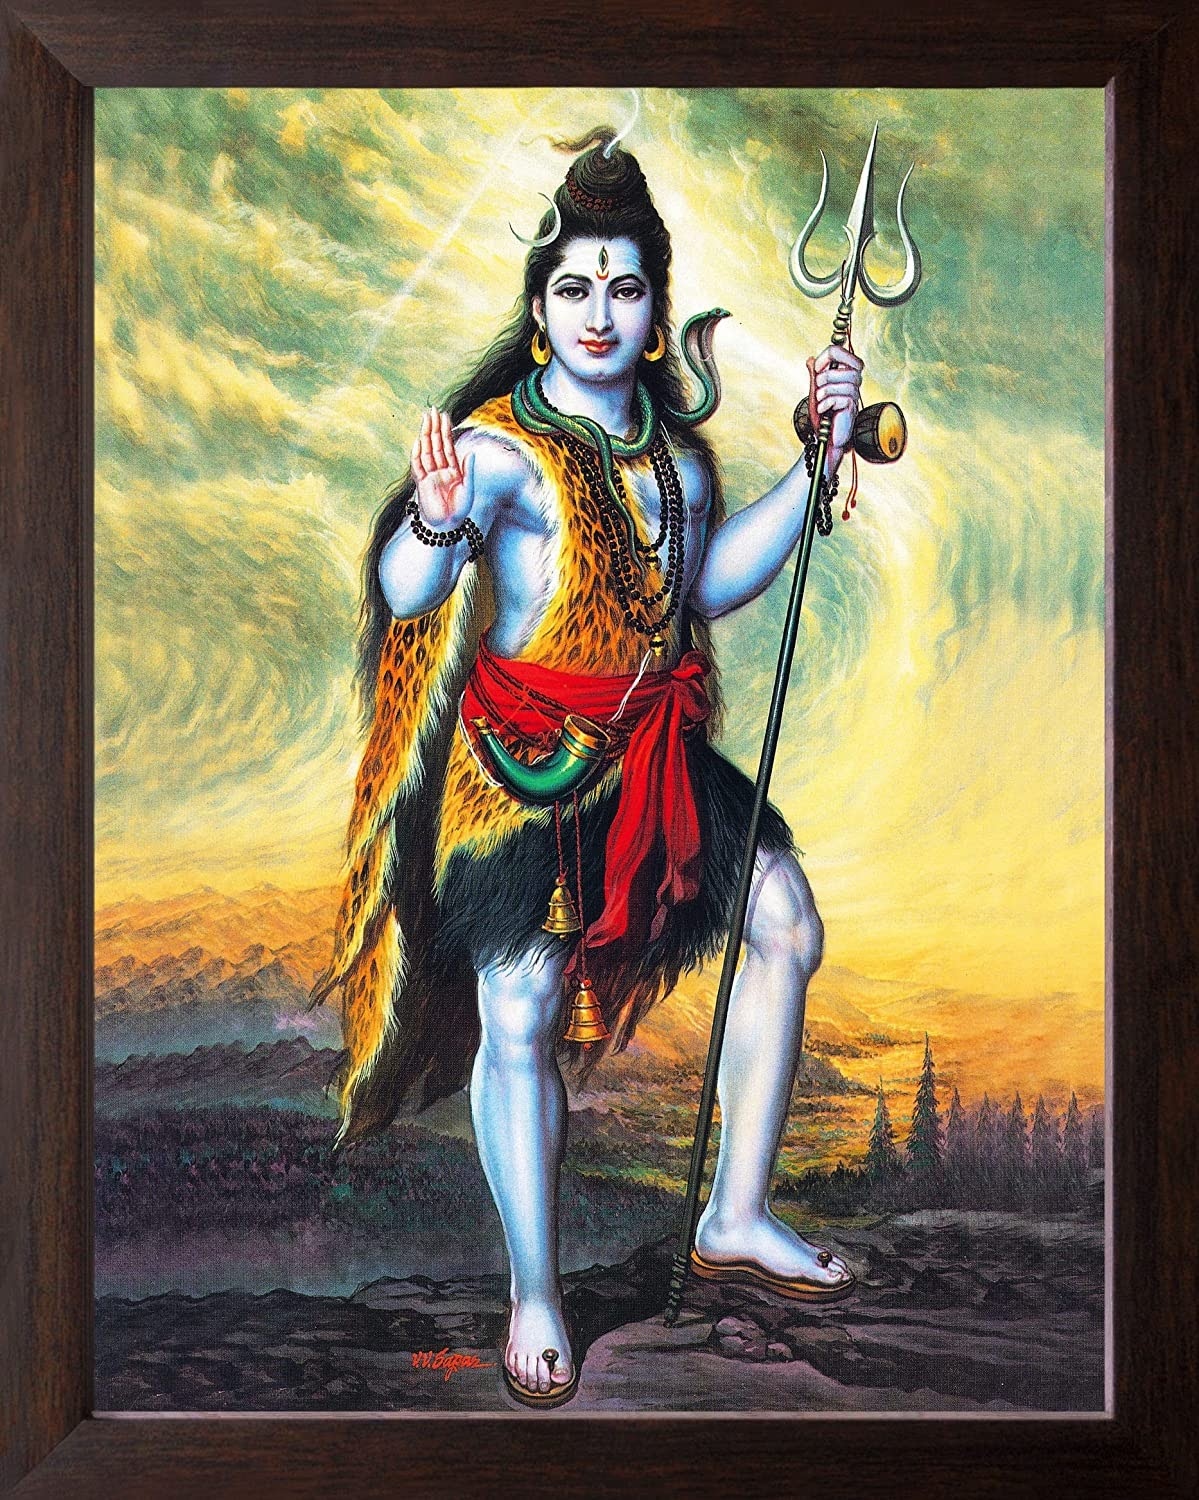 Bhagwan Ji Ke - shankar ji